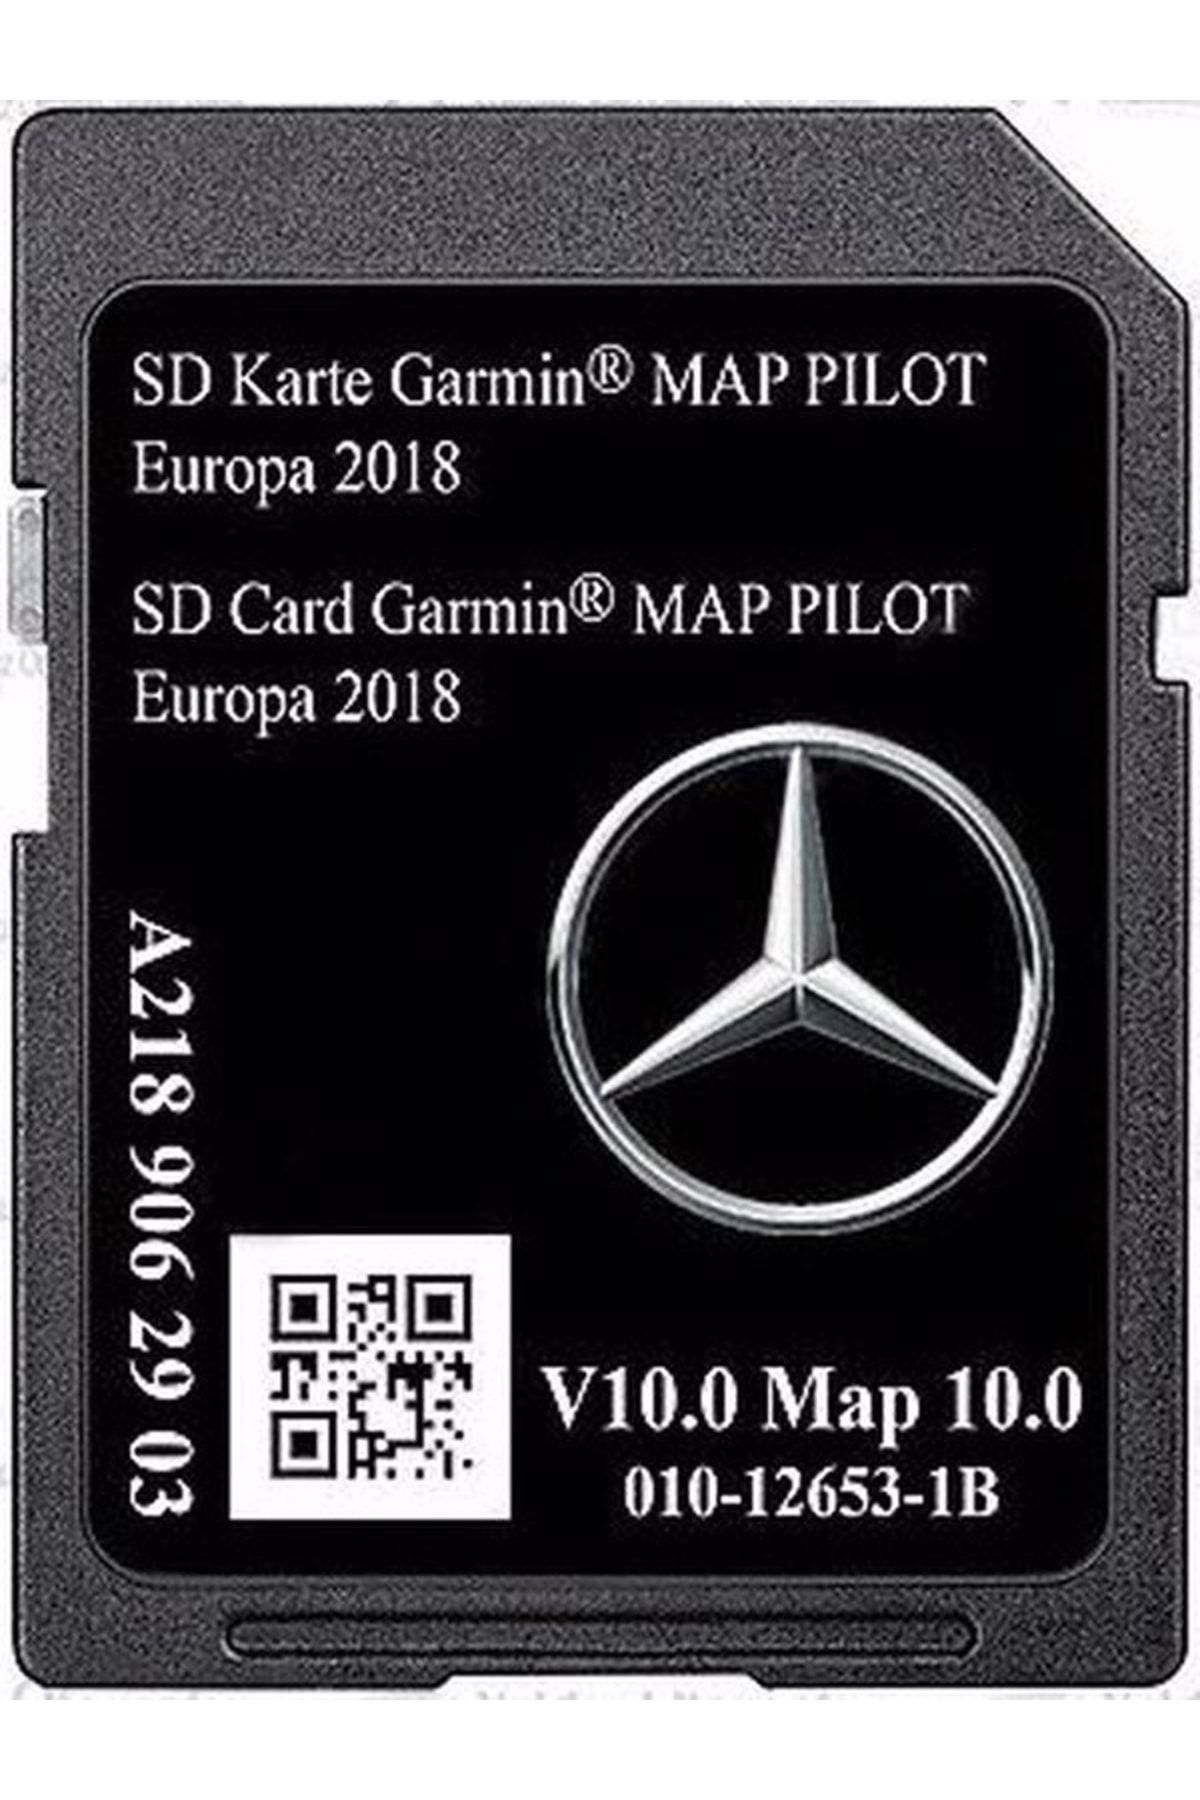 Aflede Foresee vegne Mercedes -benz Garmin Map Pilot Sd Card Türkiye Ve Avrupa Haritası 2018  (a2189062903) Fiyatı, Yorumları - Trendyol